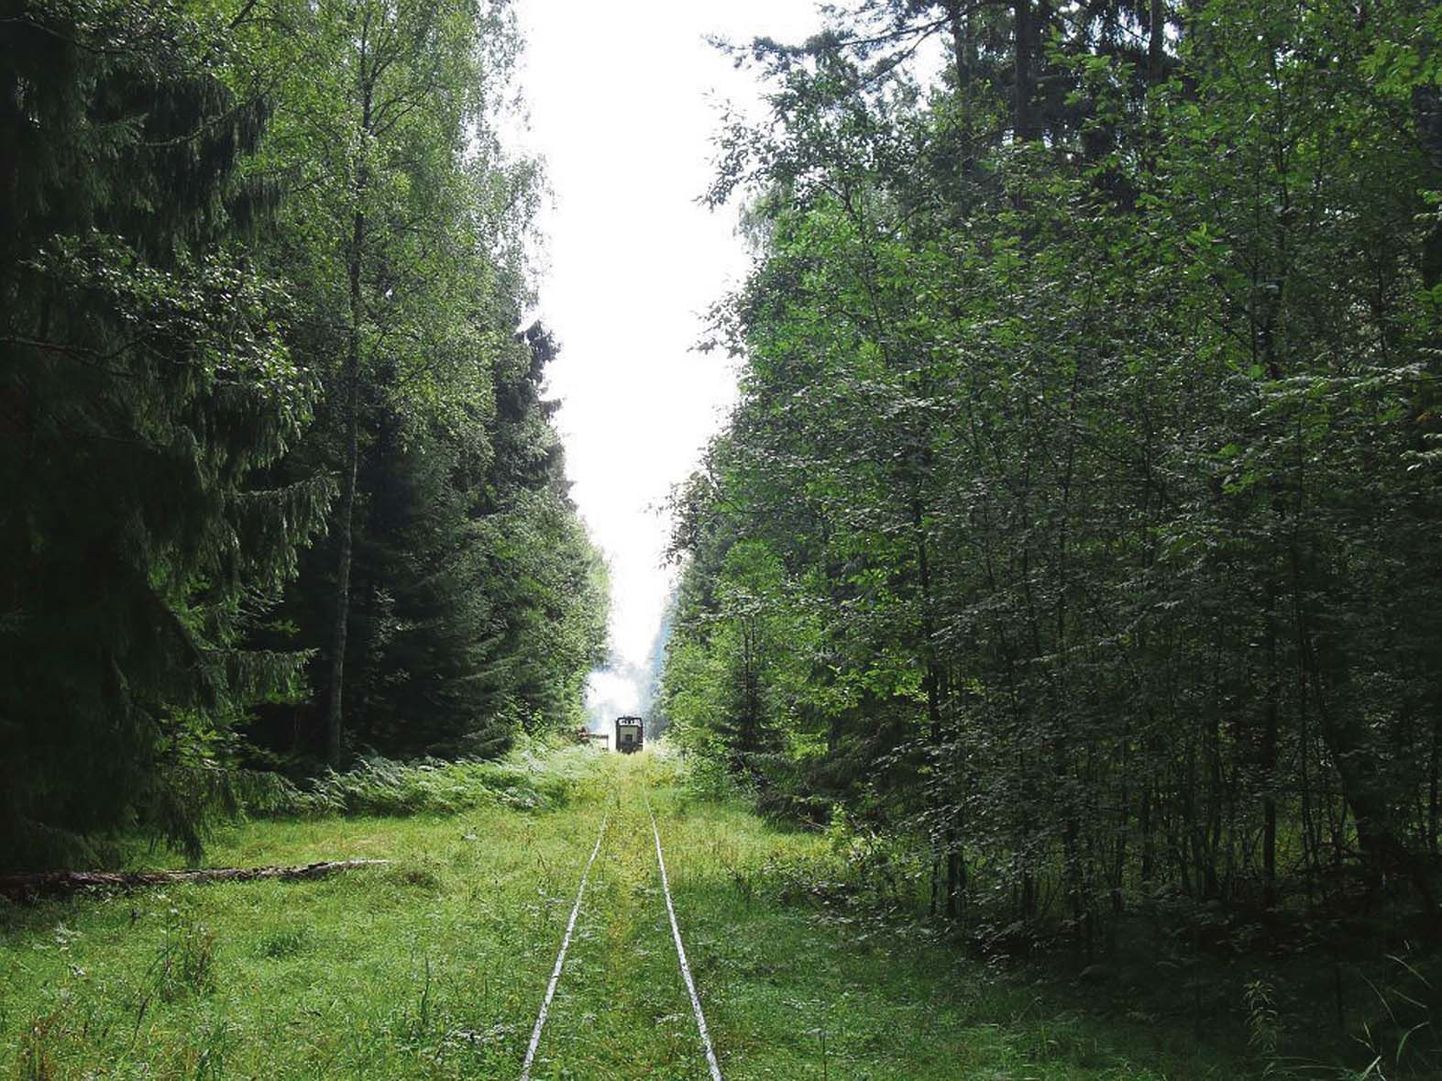 Naissaare kitsarööpmeline raudtee ja sellel liiklev ühe vaguniga rong sõidutab turiste sadama ja Männiku küla vahel.